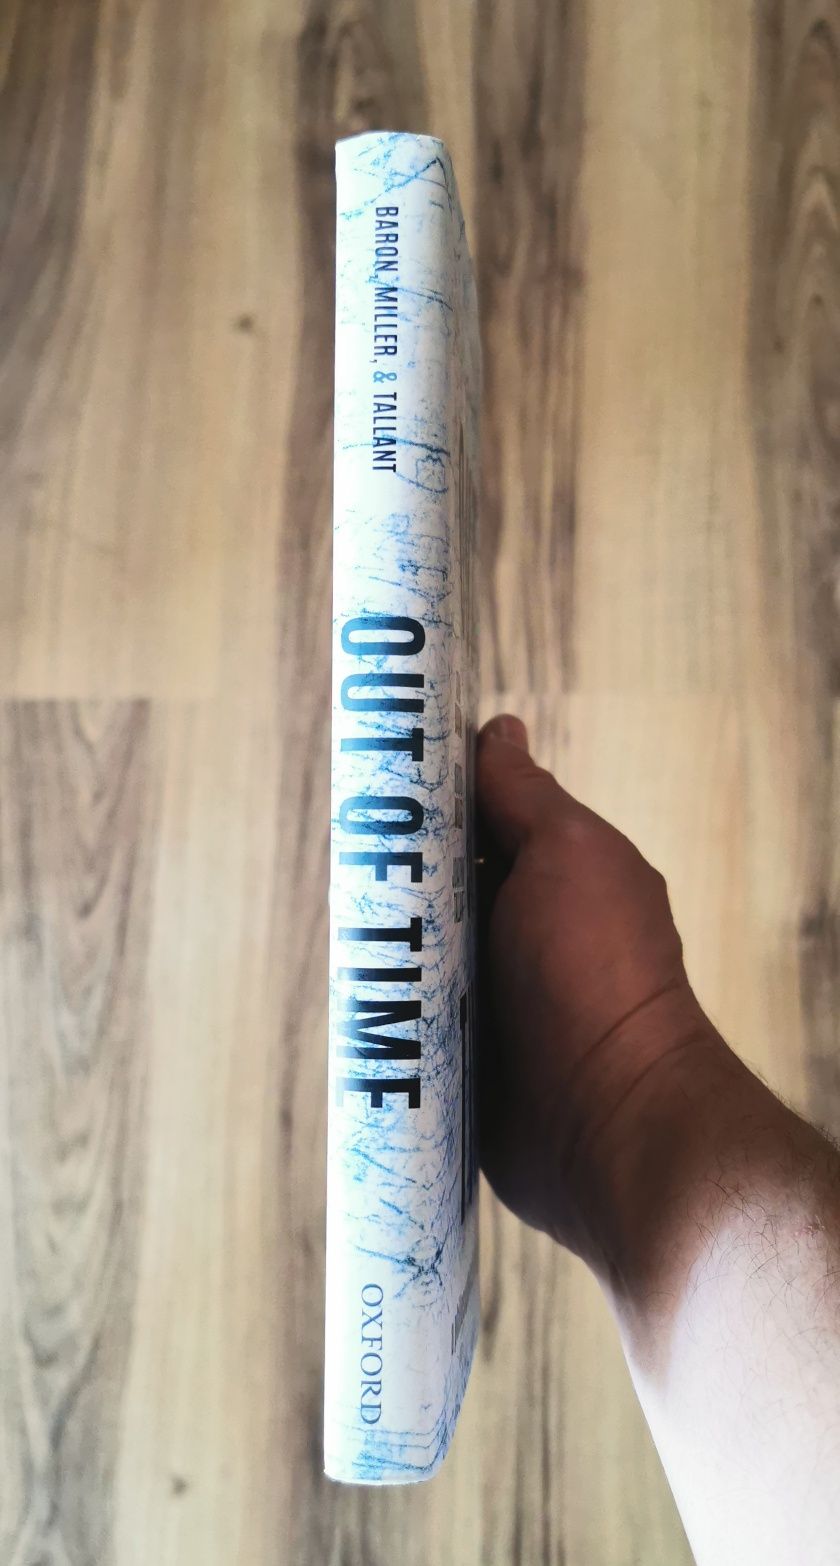 Vând 5 buc.-carte în limba engleză "Out of time" by Oxford University